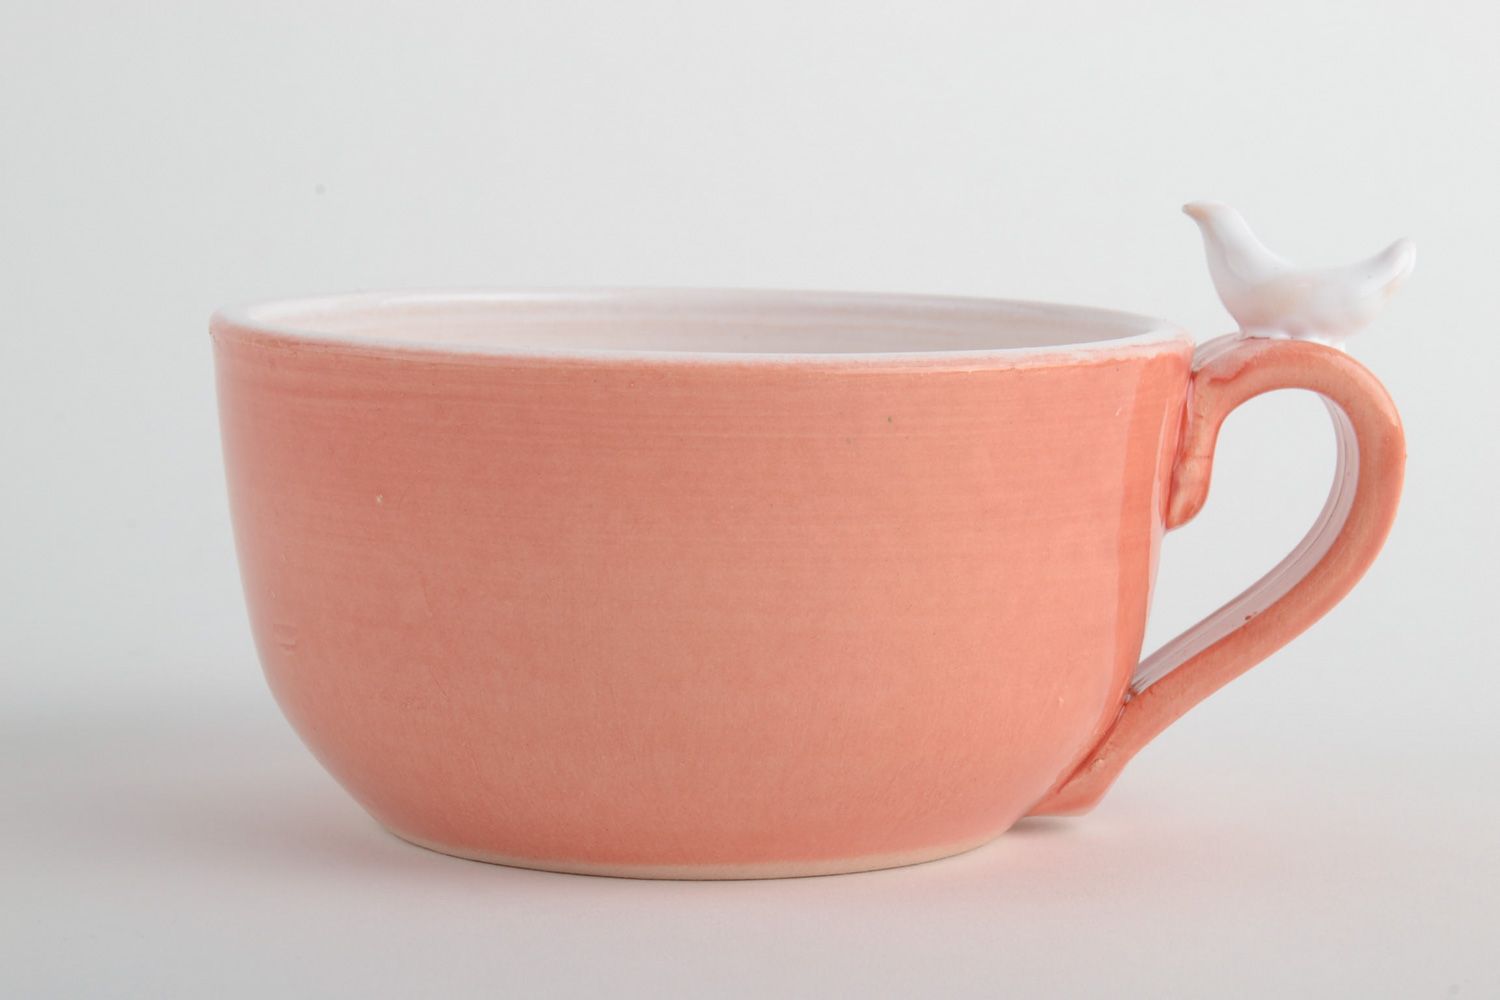 Керамическая чашка расписанная эмалью и покрытая глазурью розовая фото 2